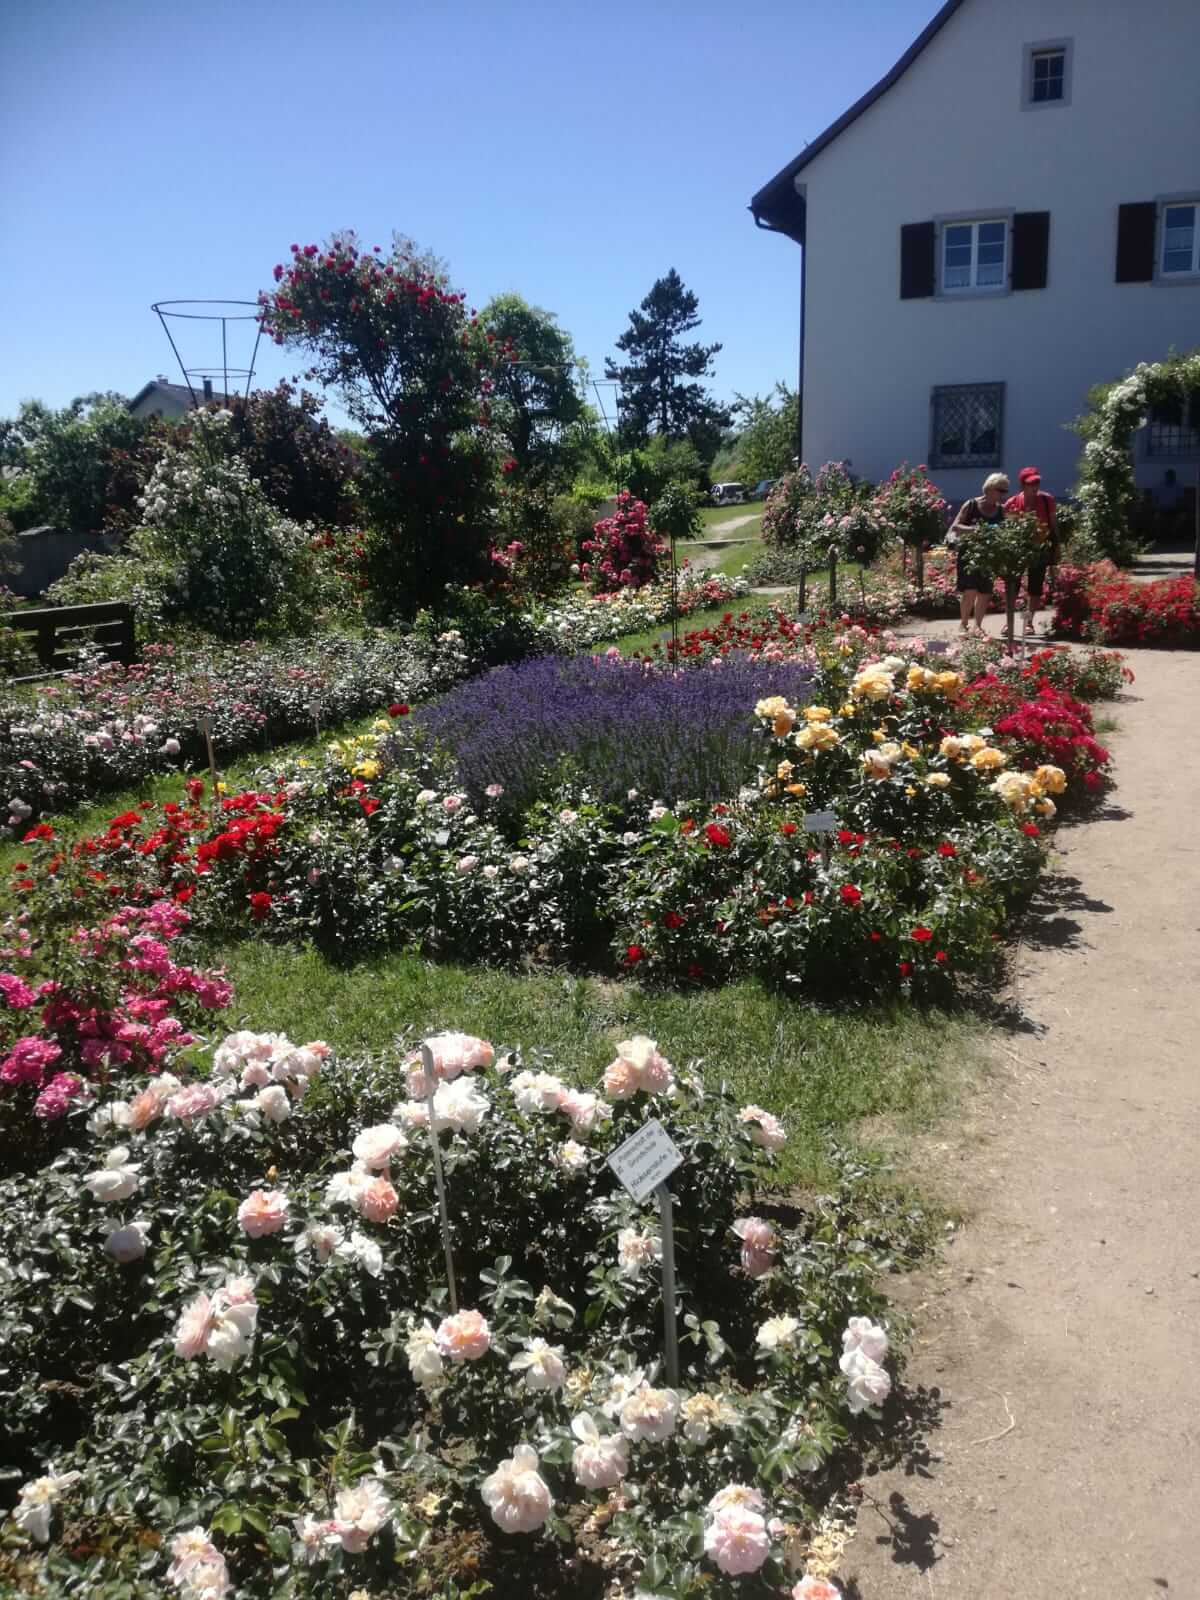 Halbtagesausflug Rosenblüte in Nöggenschwiel 2019 - bewundern und staunen